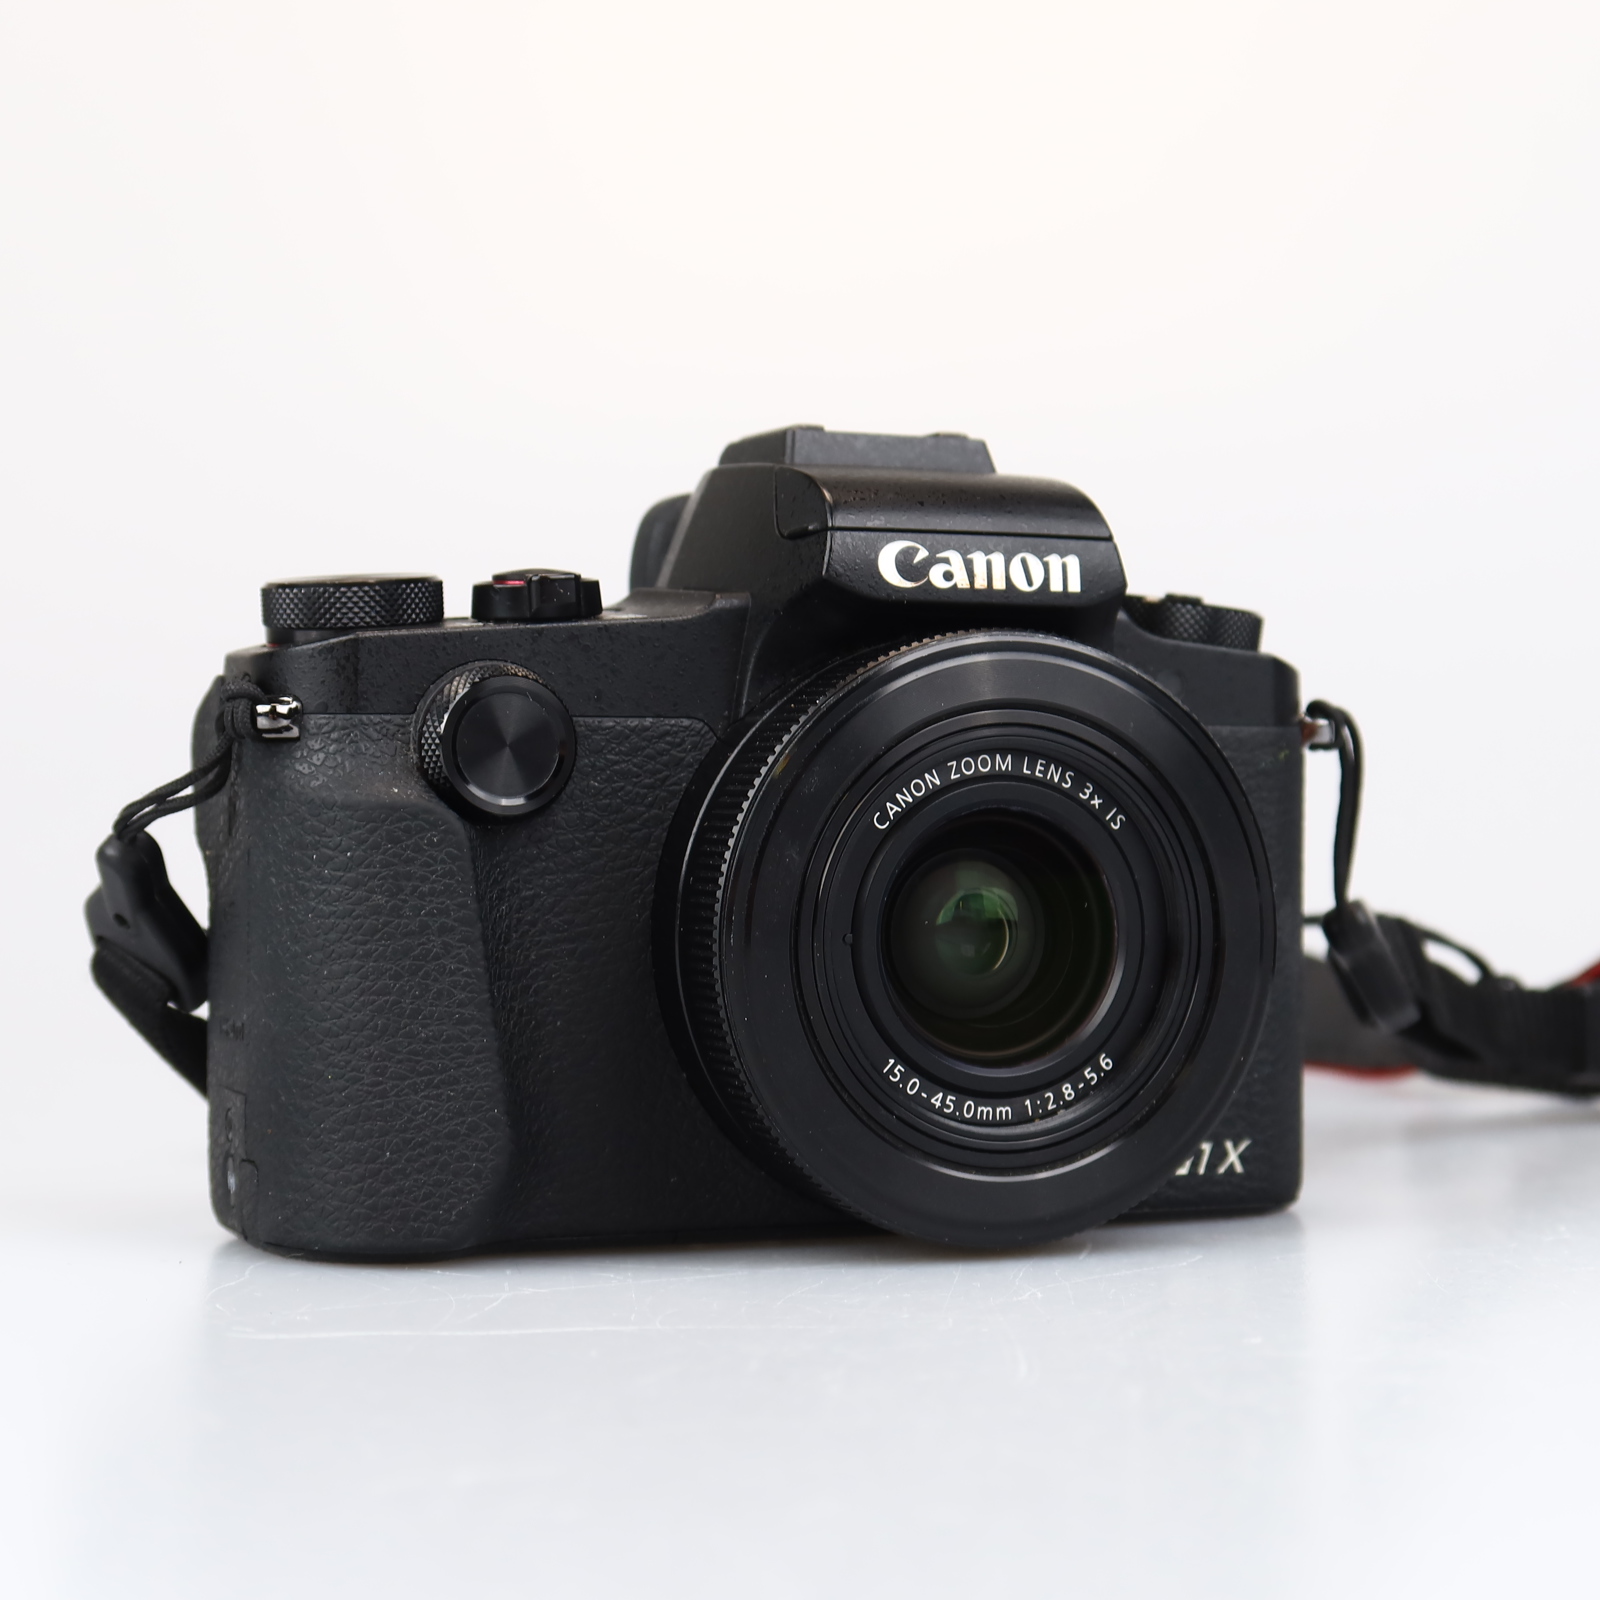 (Myyty) Canon PowerShot G1 X Mark III (Käytetty)